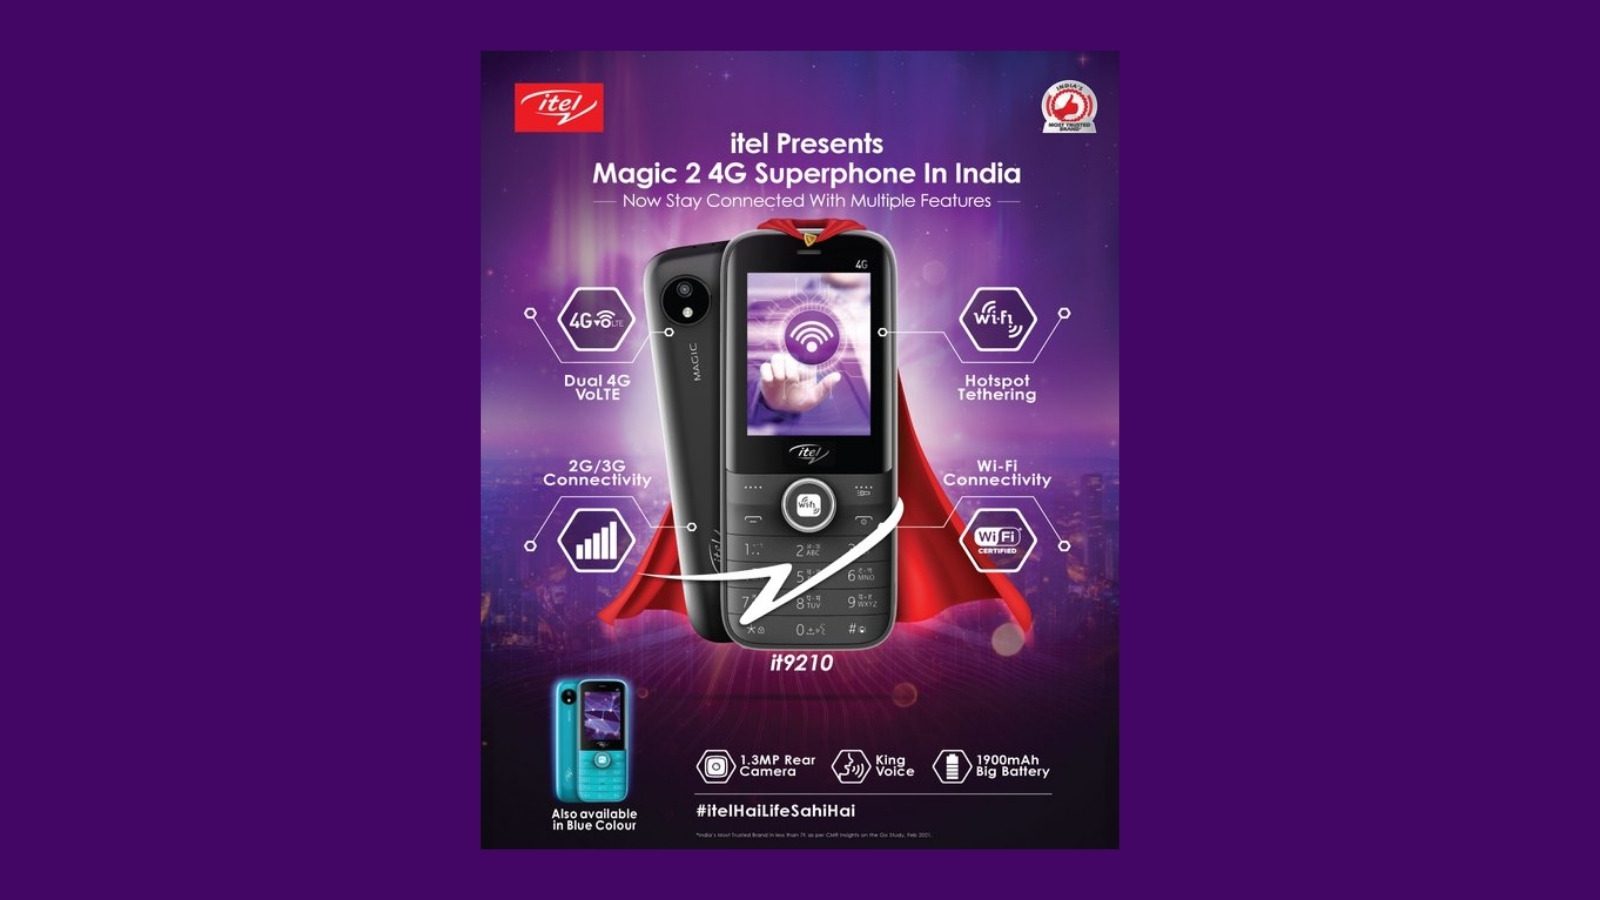 Itel запускает в Индии первый мобильный телефон 4G — супертелефон Magic 2 с поддержкой 4G